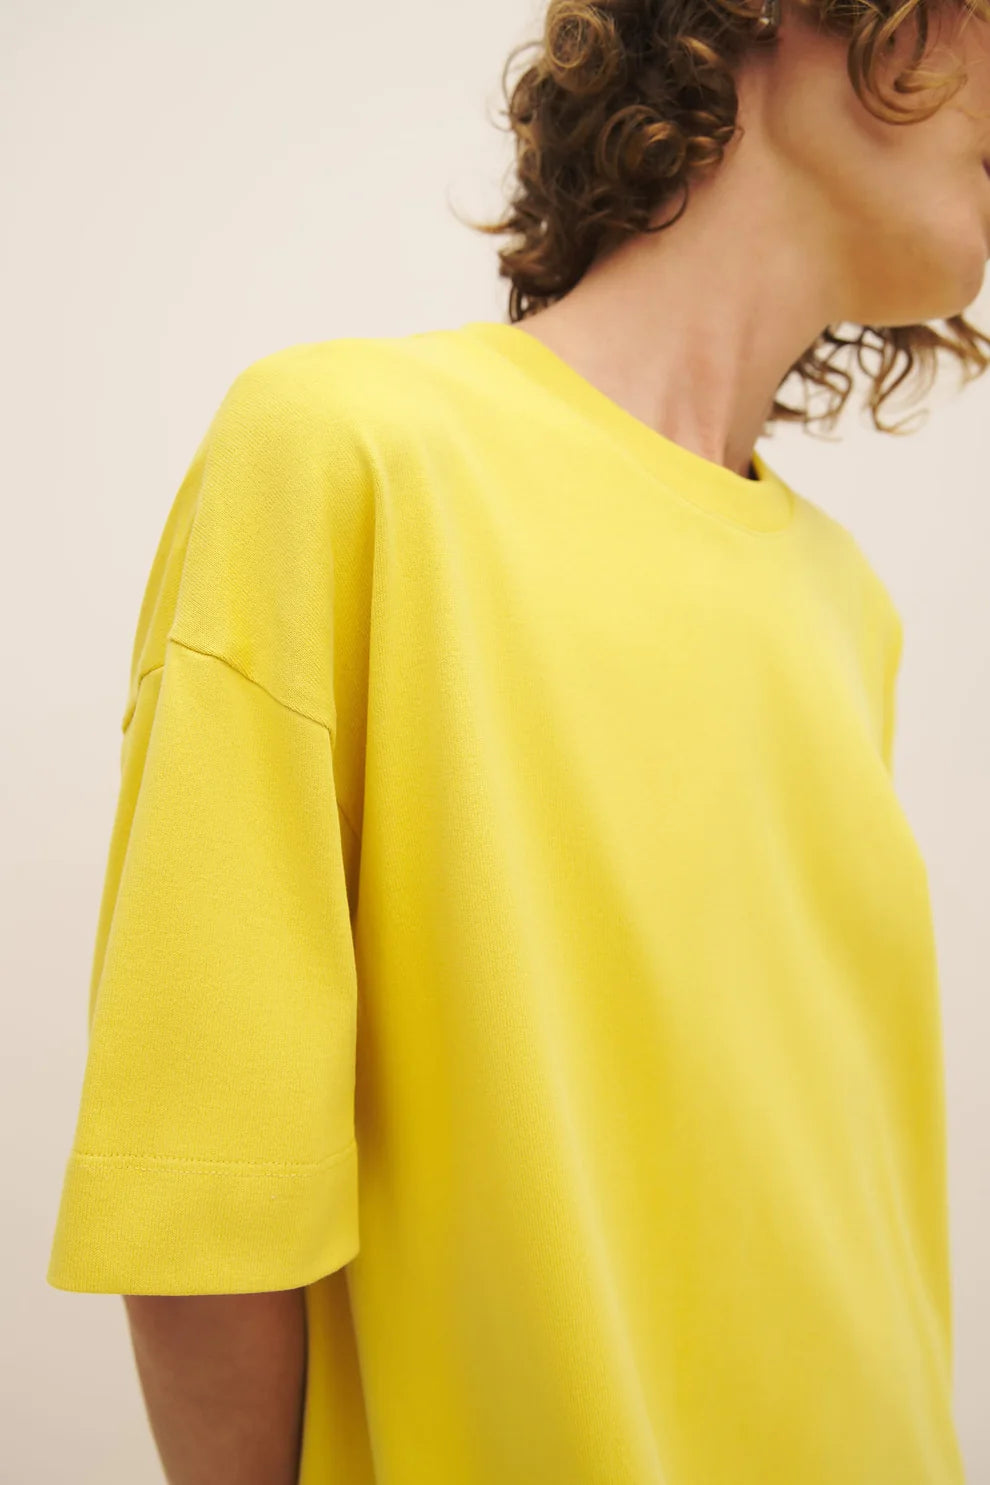 Boxy T-Shirt Dress in Daffodil | Kowtow